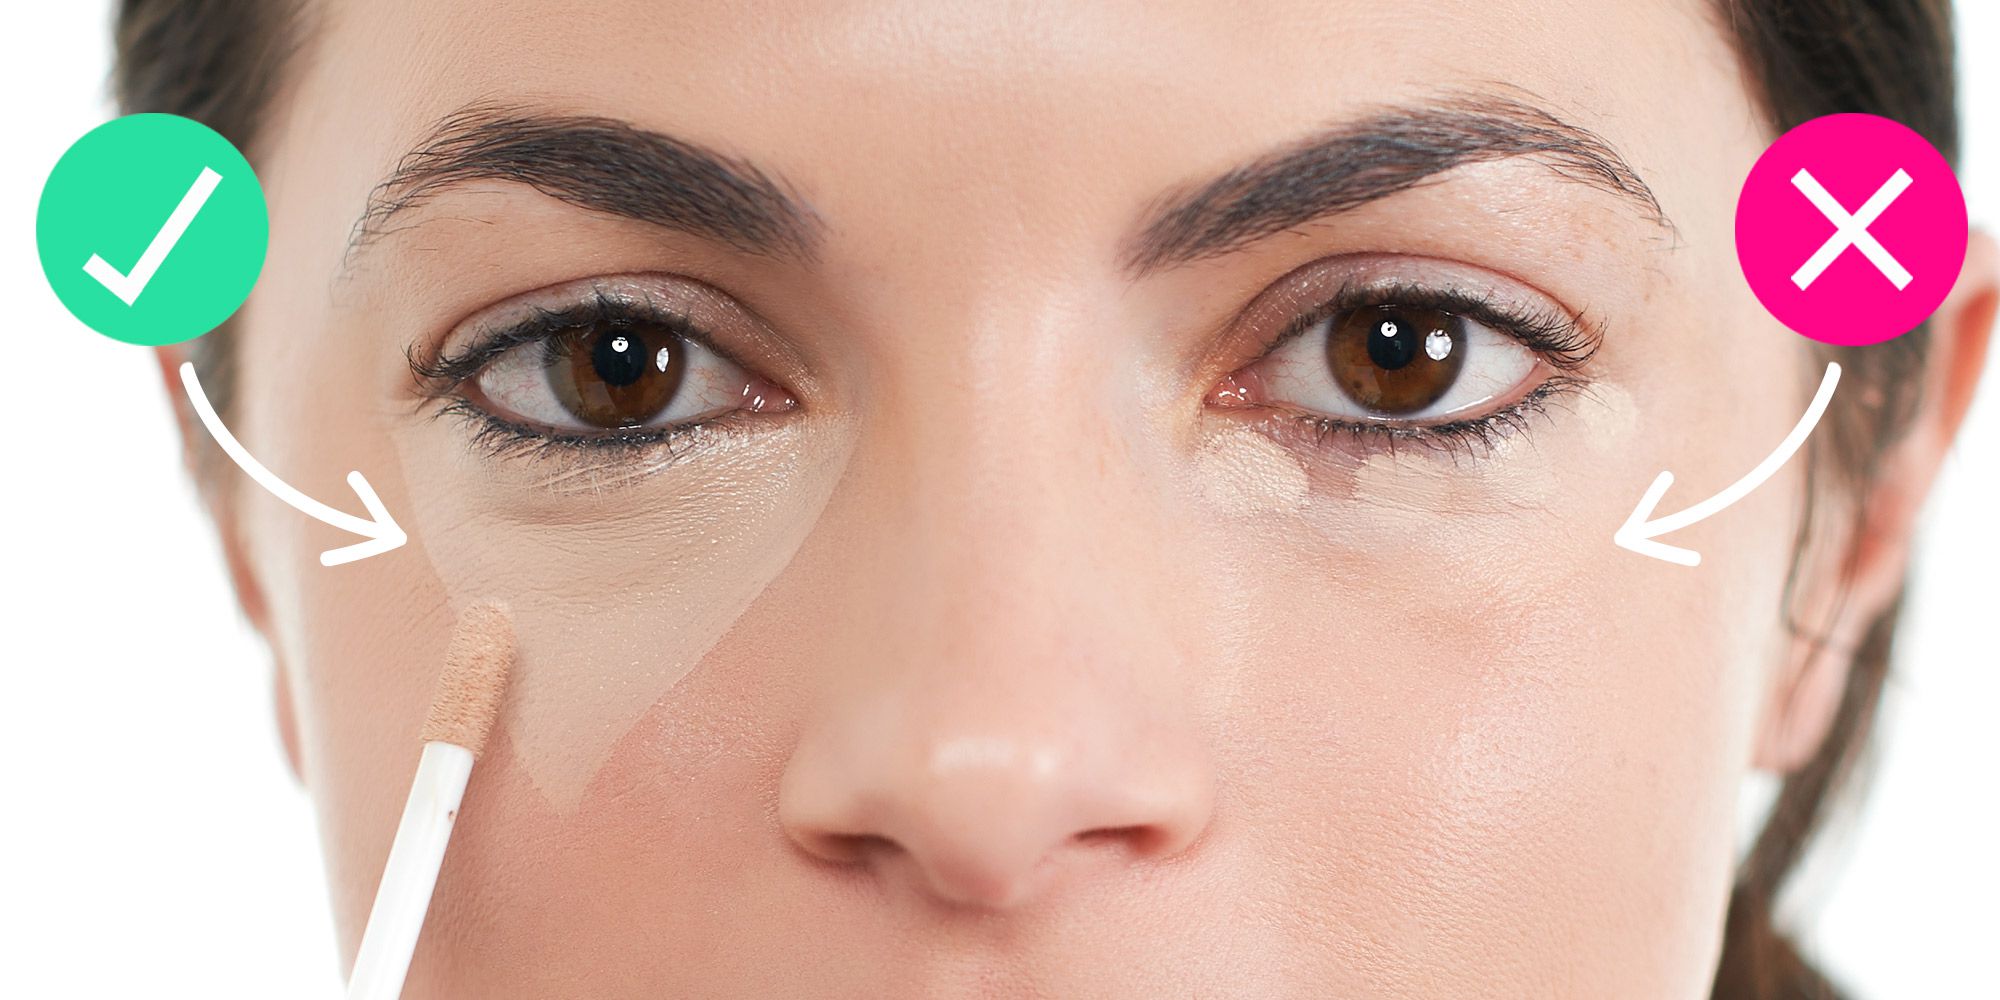 Cách thoa kem che khuyết điểm lên vùng mắt đúng là thoa theo hình tam giác.